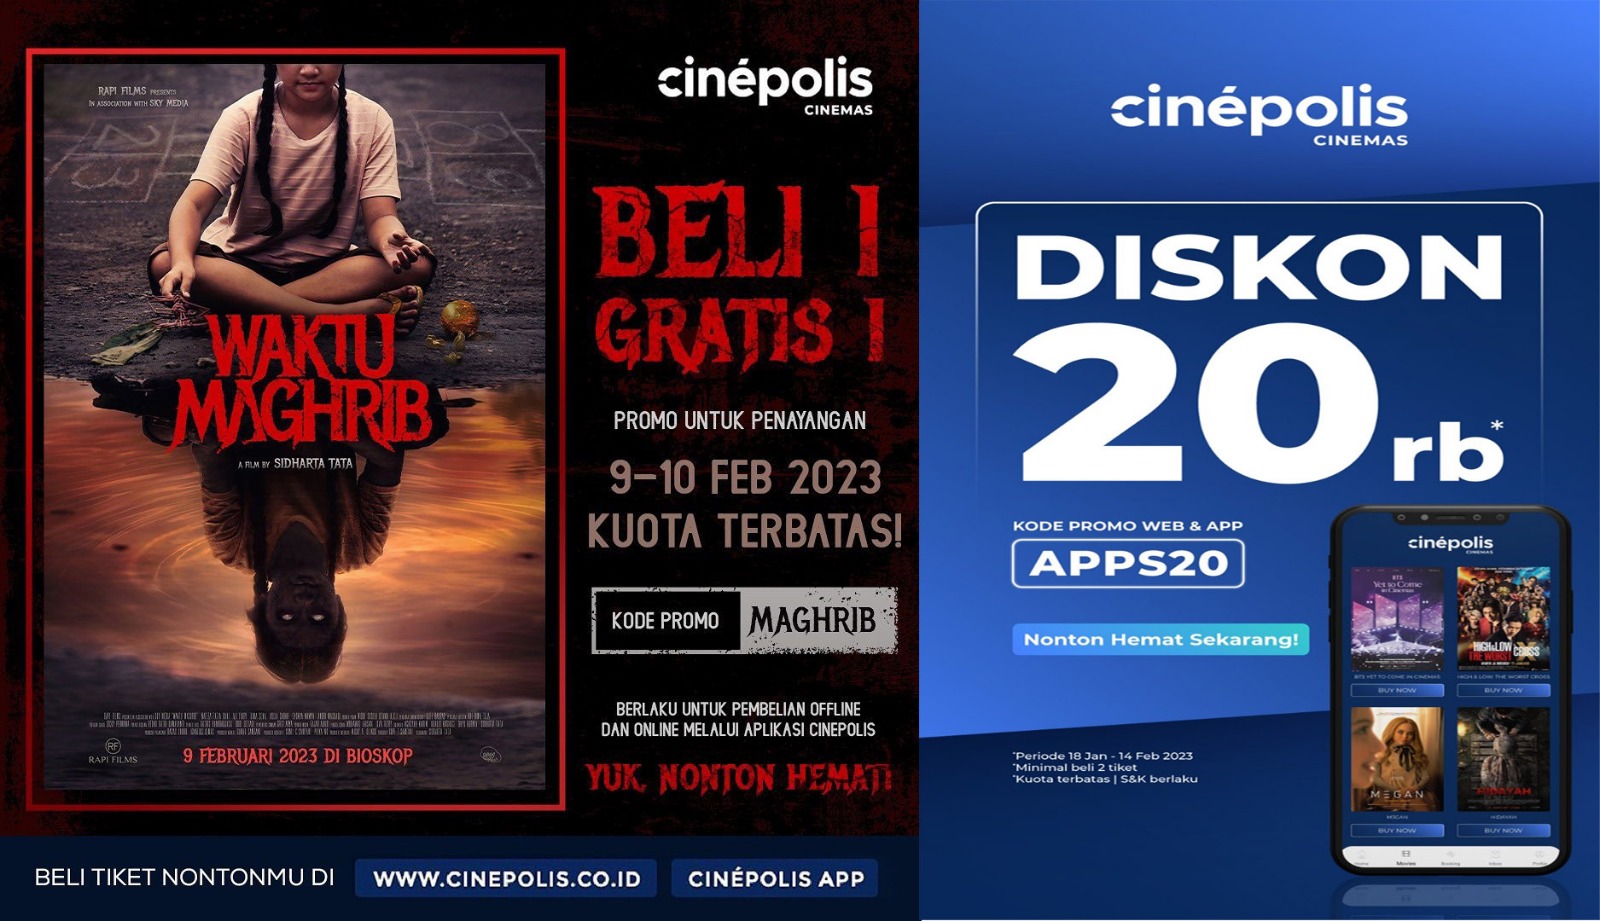 Cinepolis Lippo Plaza Lubuklinggau Hadirkan Promo Beli 1 Gratis 1 Tiket Film Waktu Maghrib